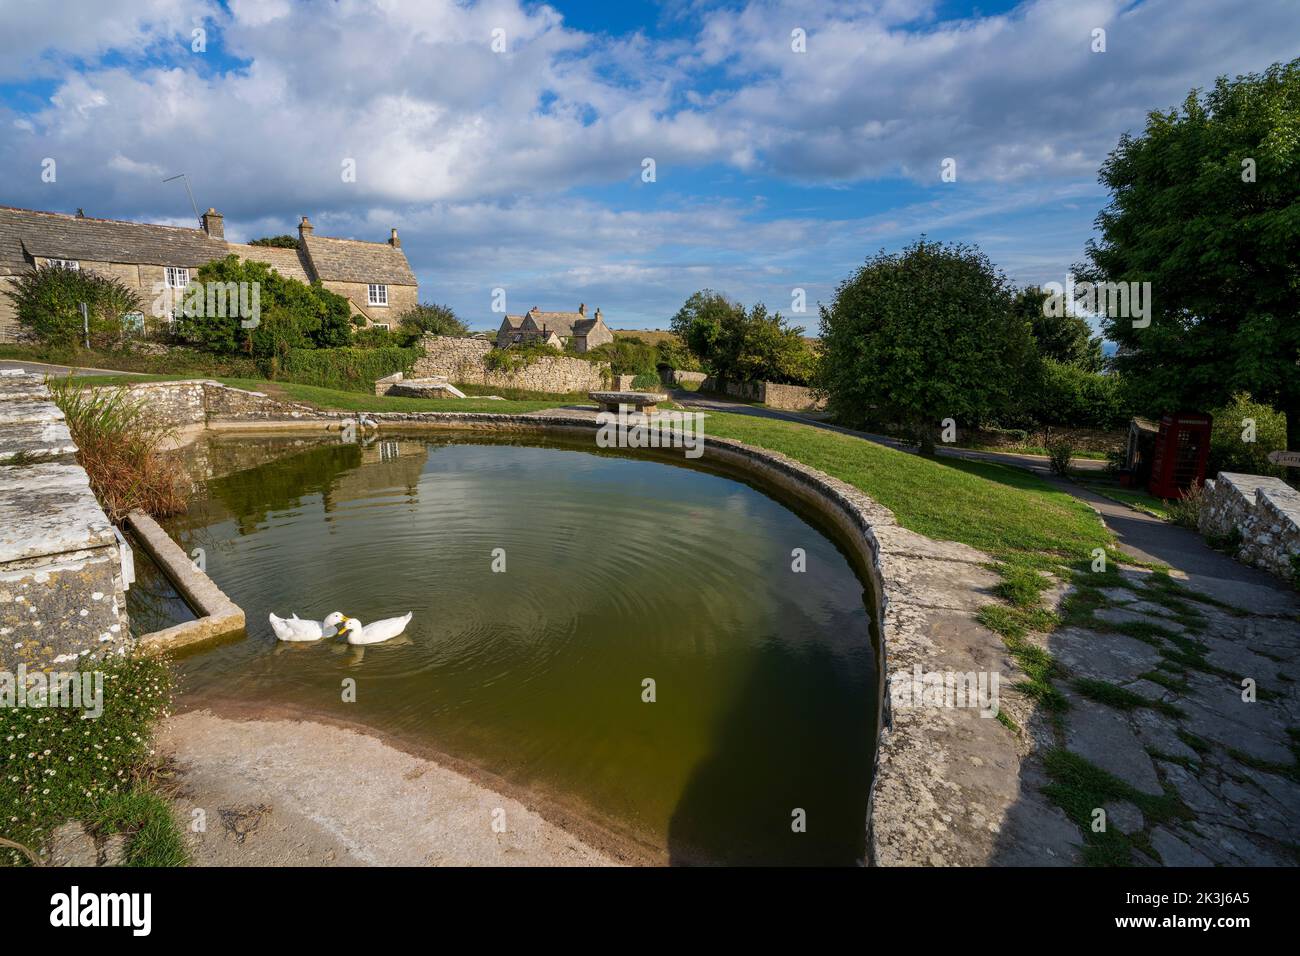 L'étang du village de Worth Matravers, île de Purbeck, Dorset, Angleterre, Royaume-Uni Banque D'Images